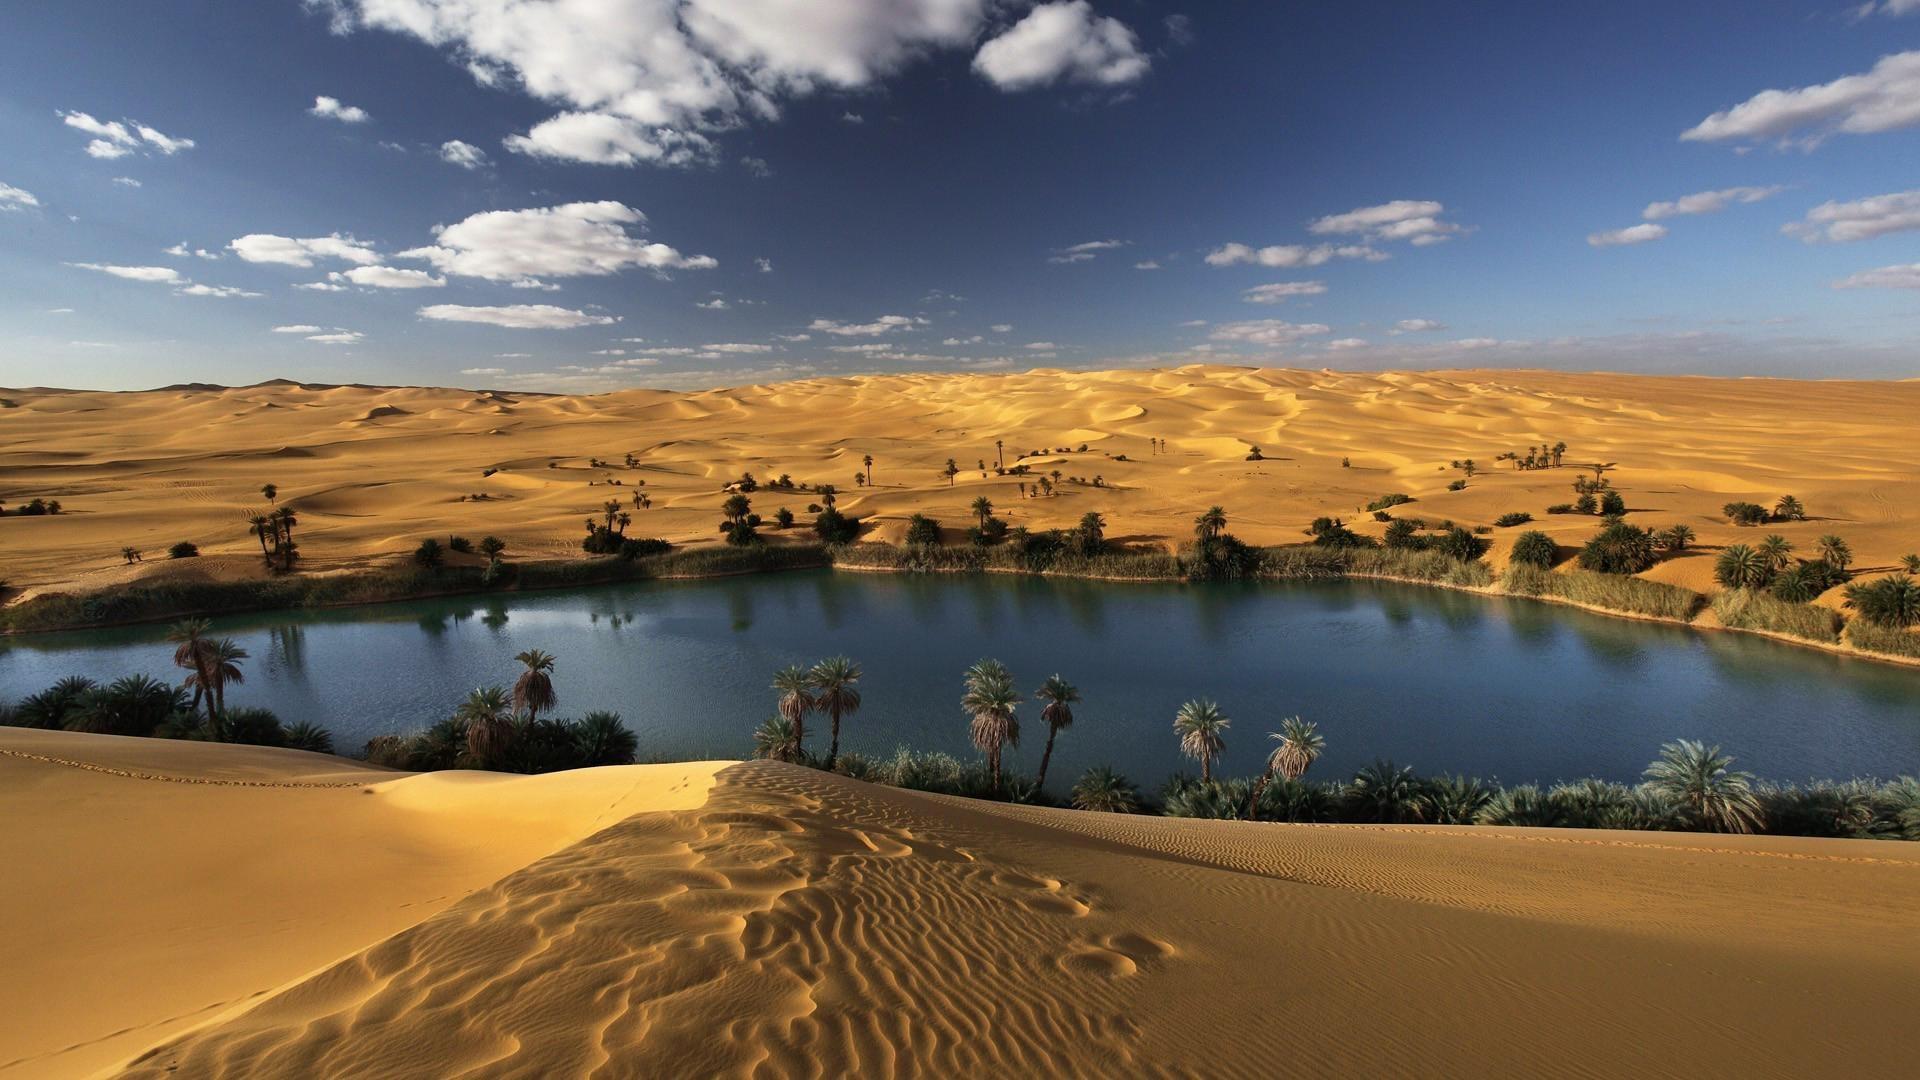 Desert Oasis Wallpaper